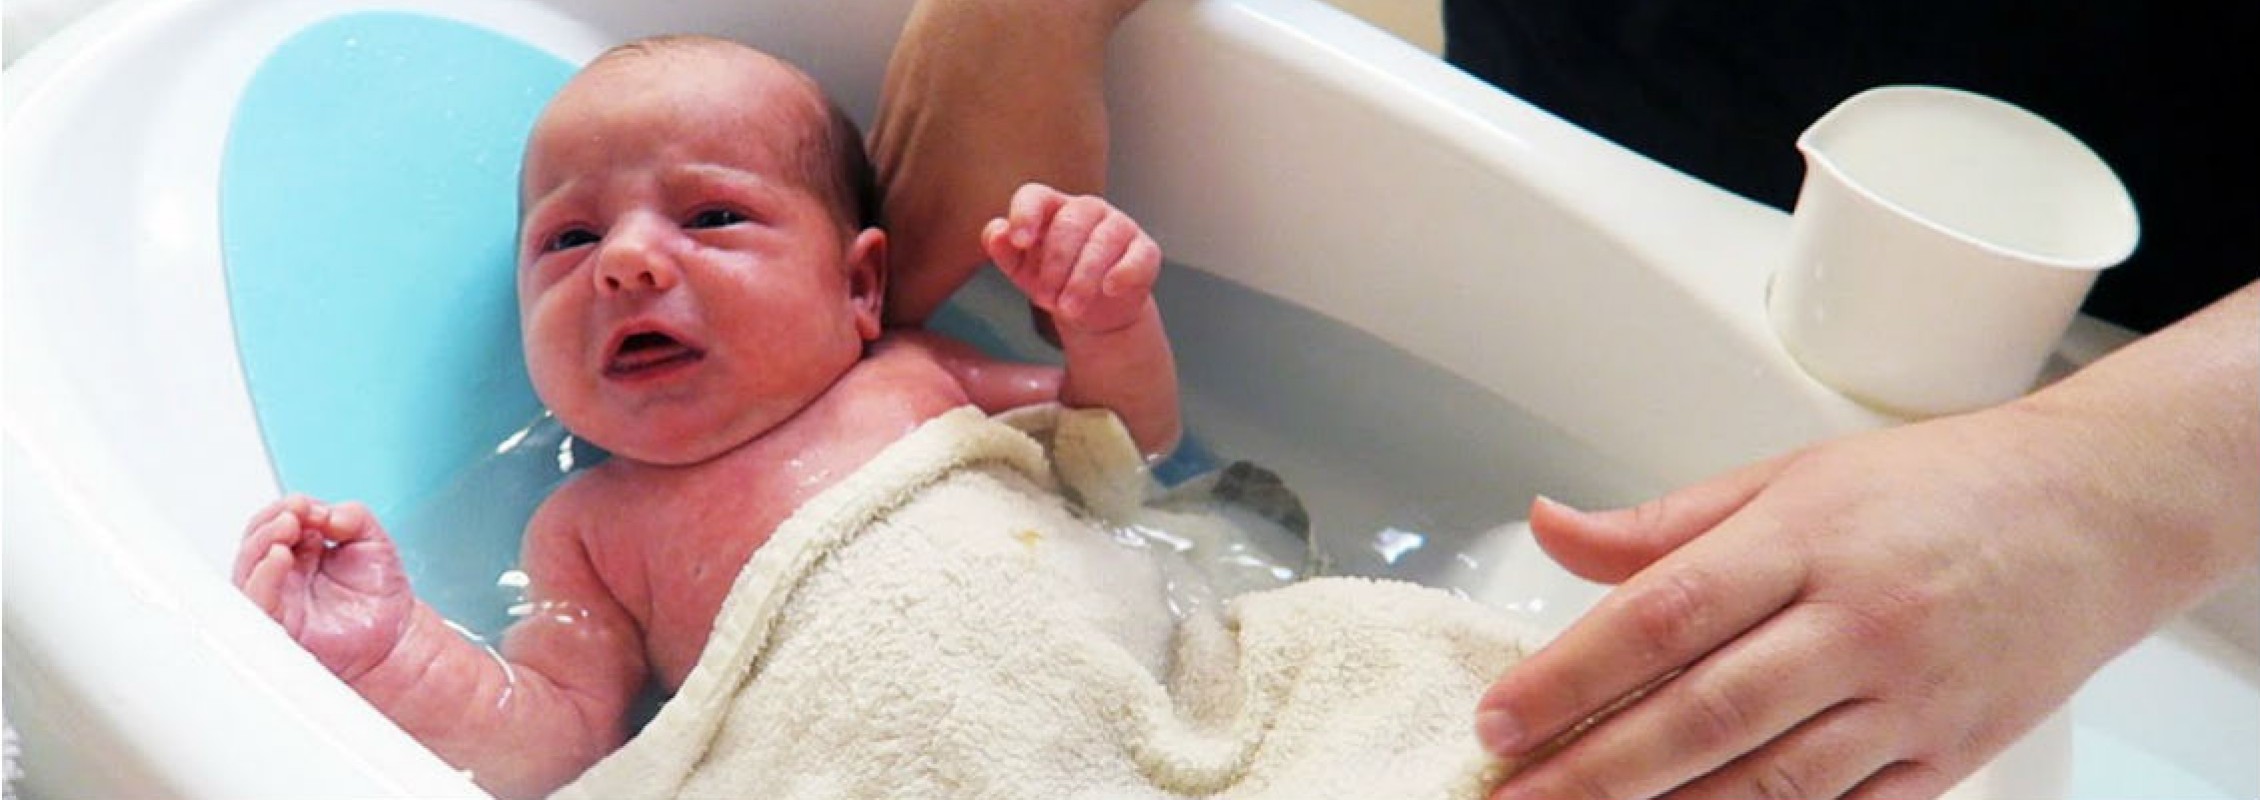 Новорожденному попала вода в ухо при купании. Ванночка для детей. Ванночка для новорожденного. Гигиенические ванны для новорожденных. Купание новорожденного ребенка.